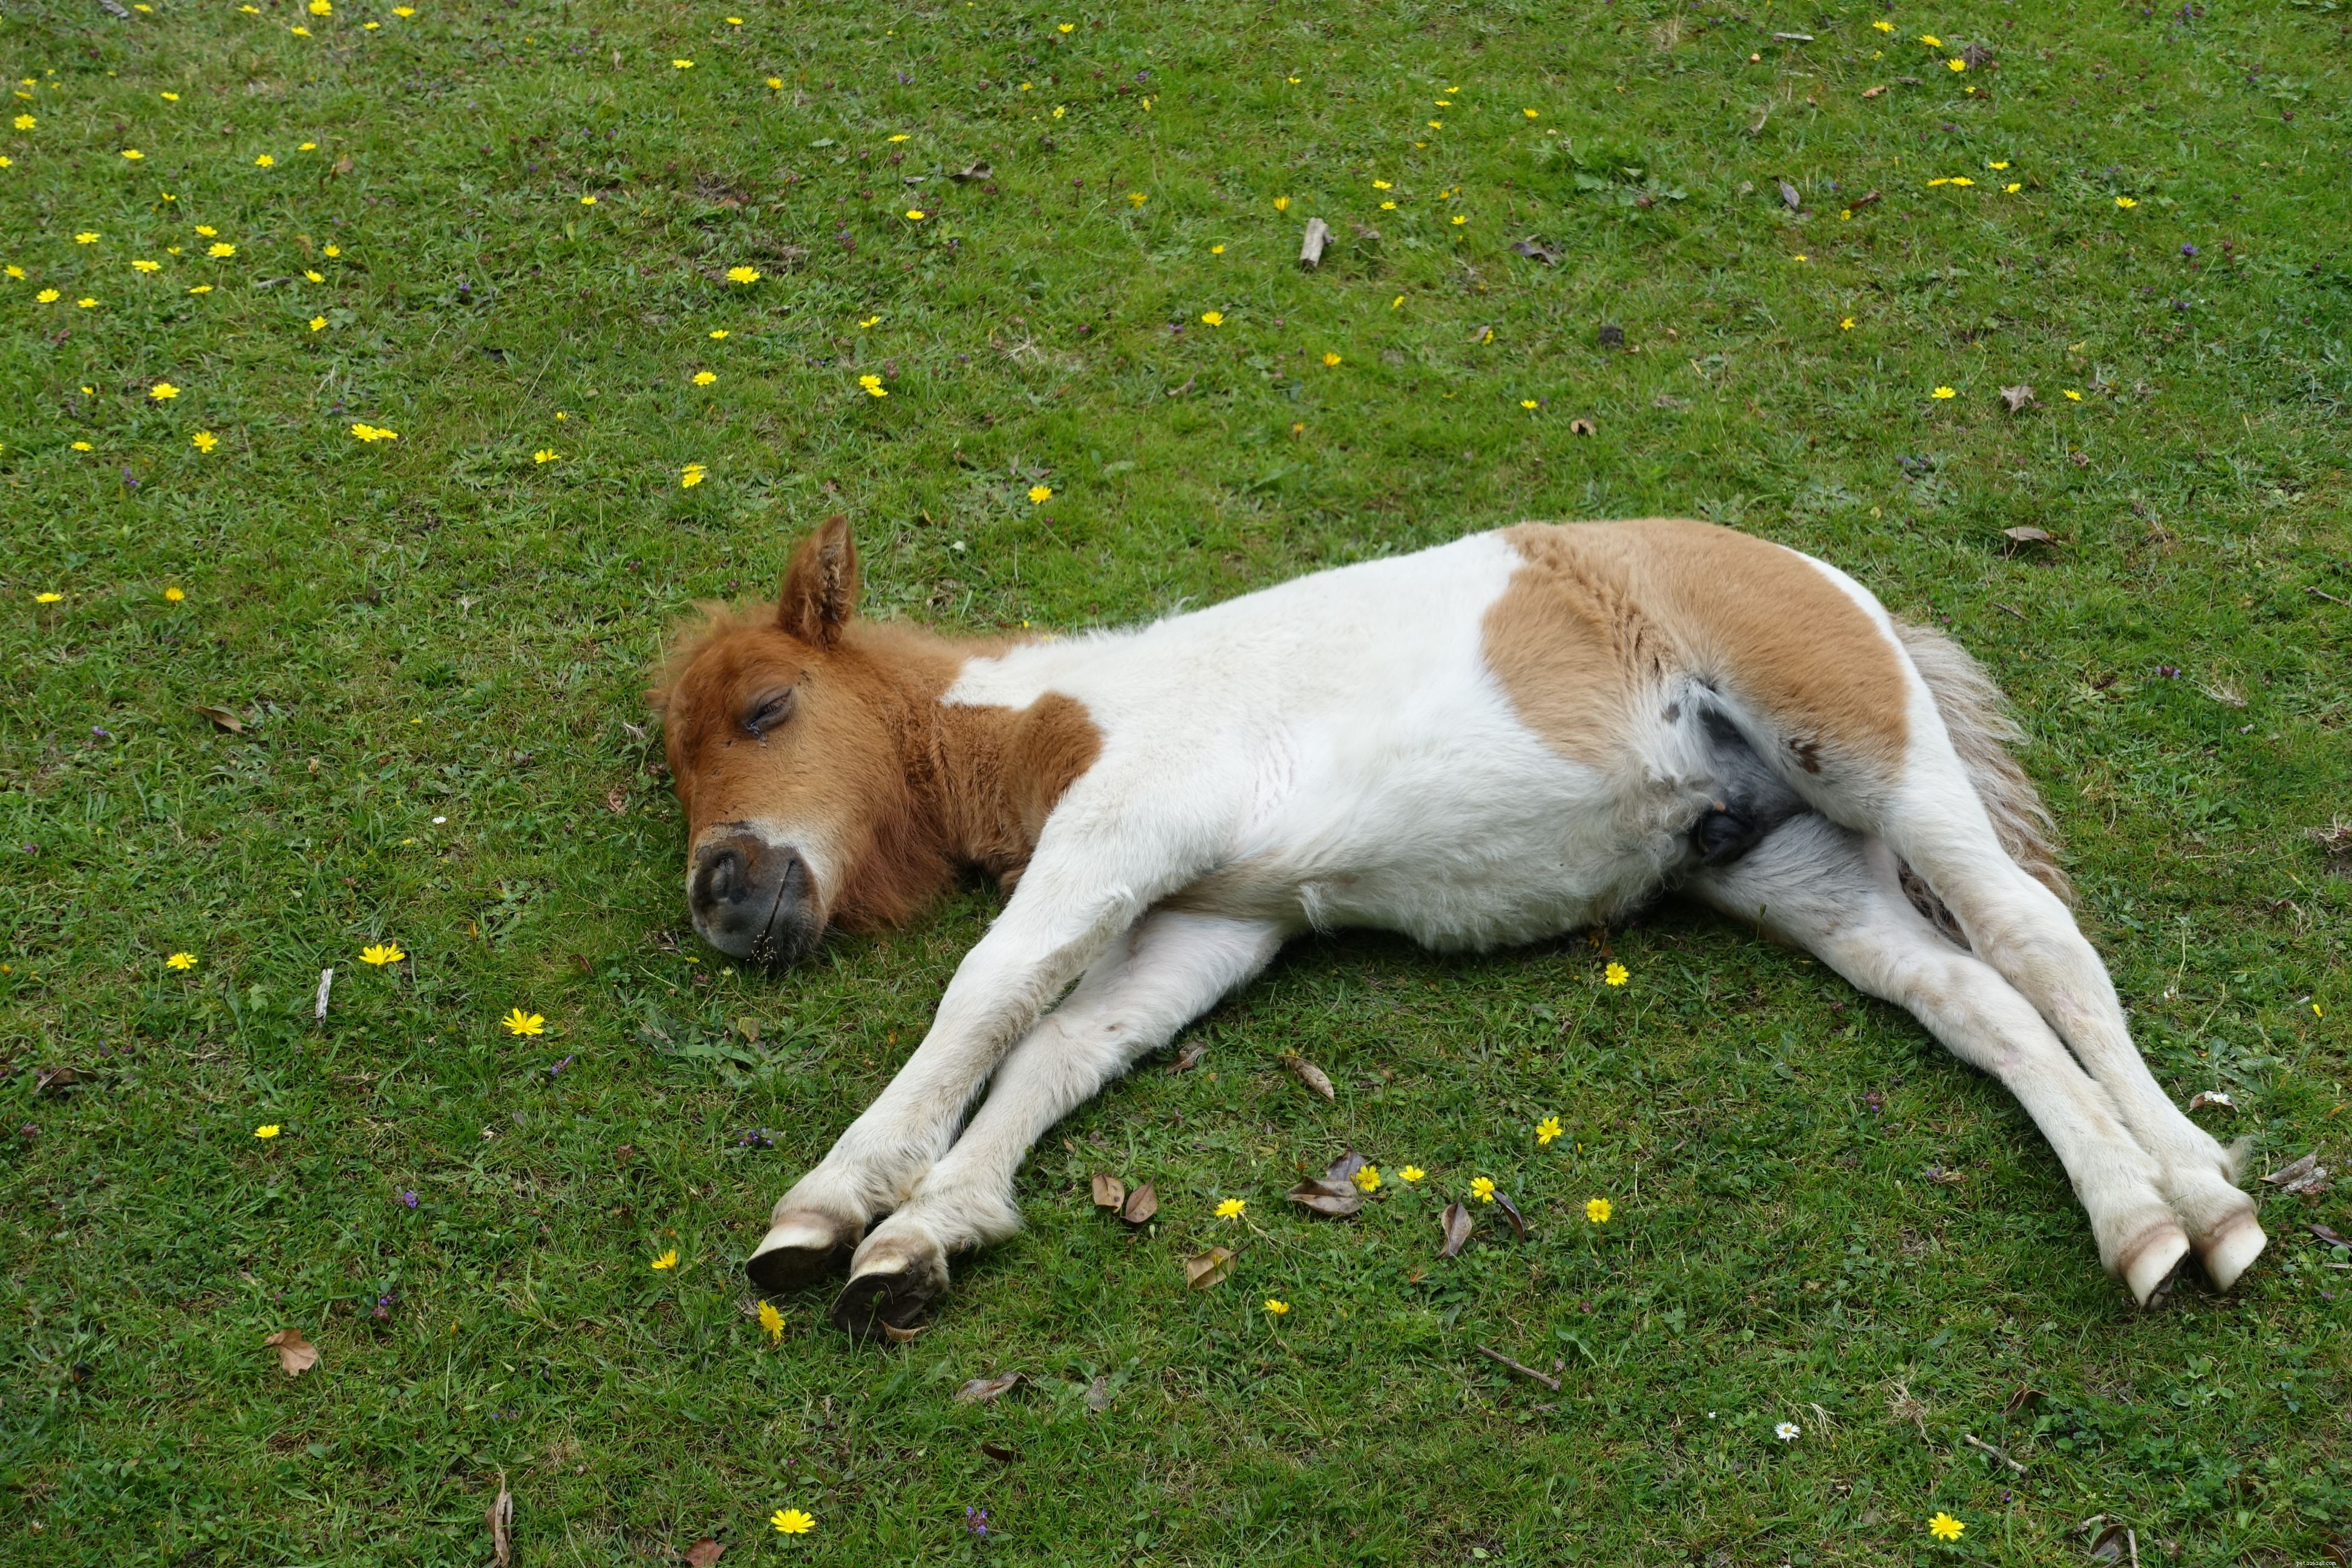 あなたは馬がどのように眠るか知っていますか？ 